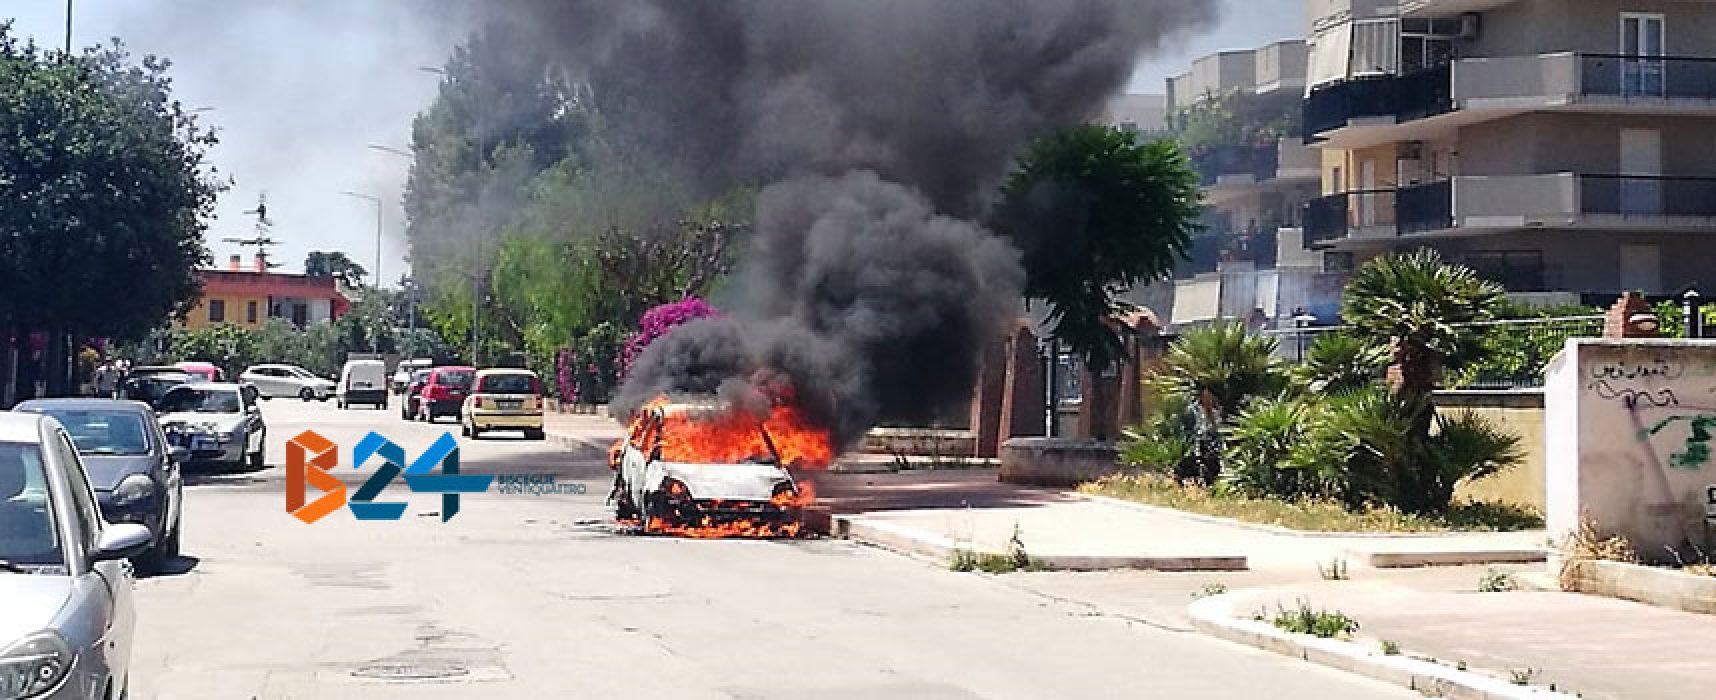 Auto prende fuoco in zona sant’Andrea, Vigili del fuoco sedano le fiamme / VIDEO